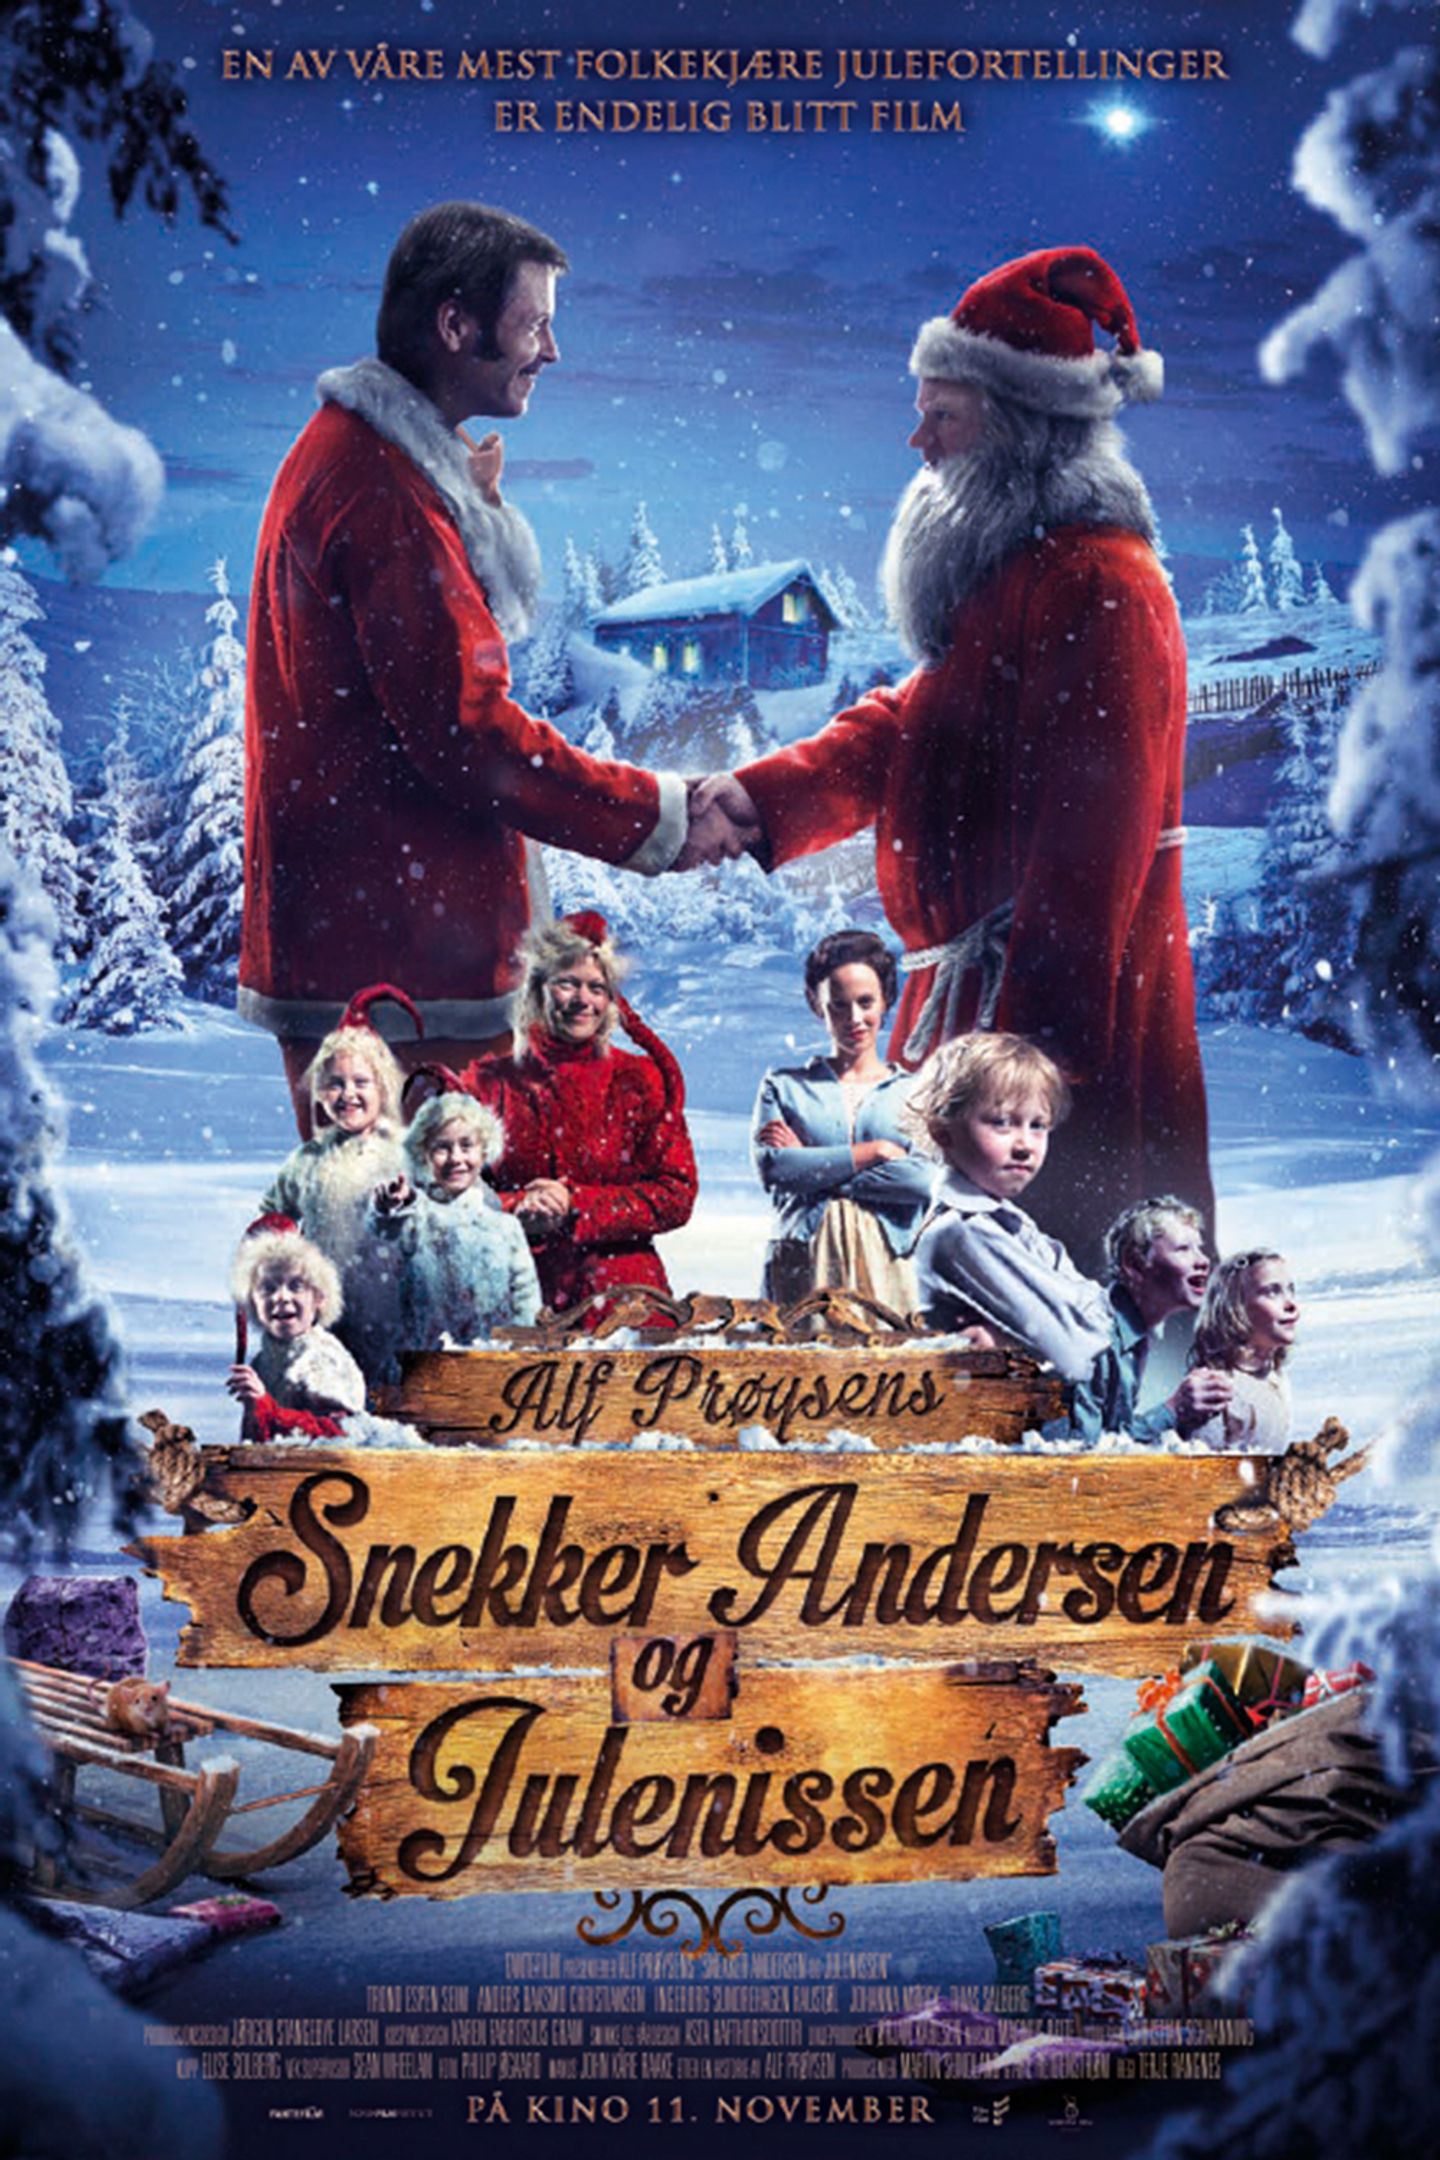 Plakat for 'Snekker Andersen og Julenissen'